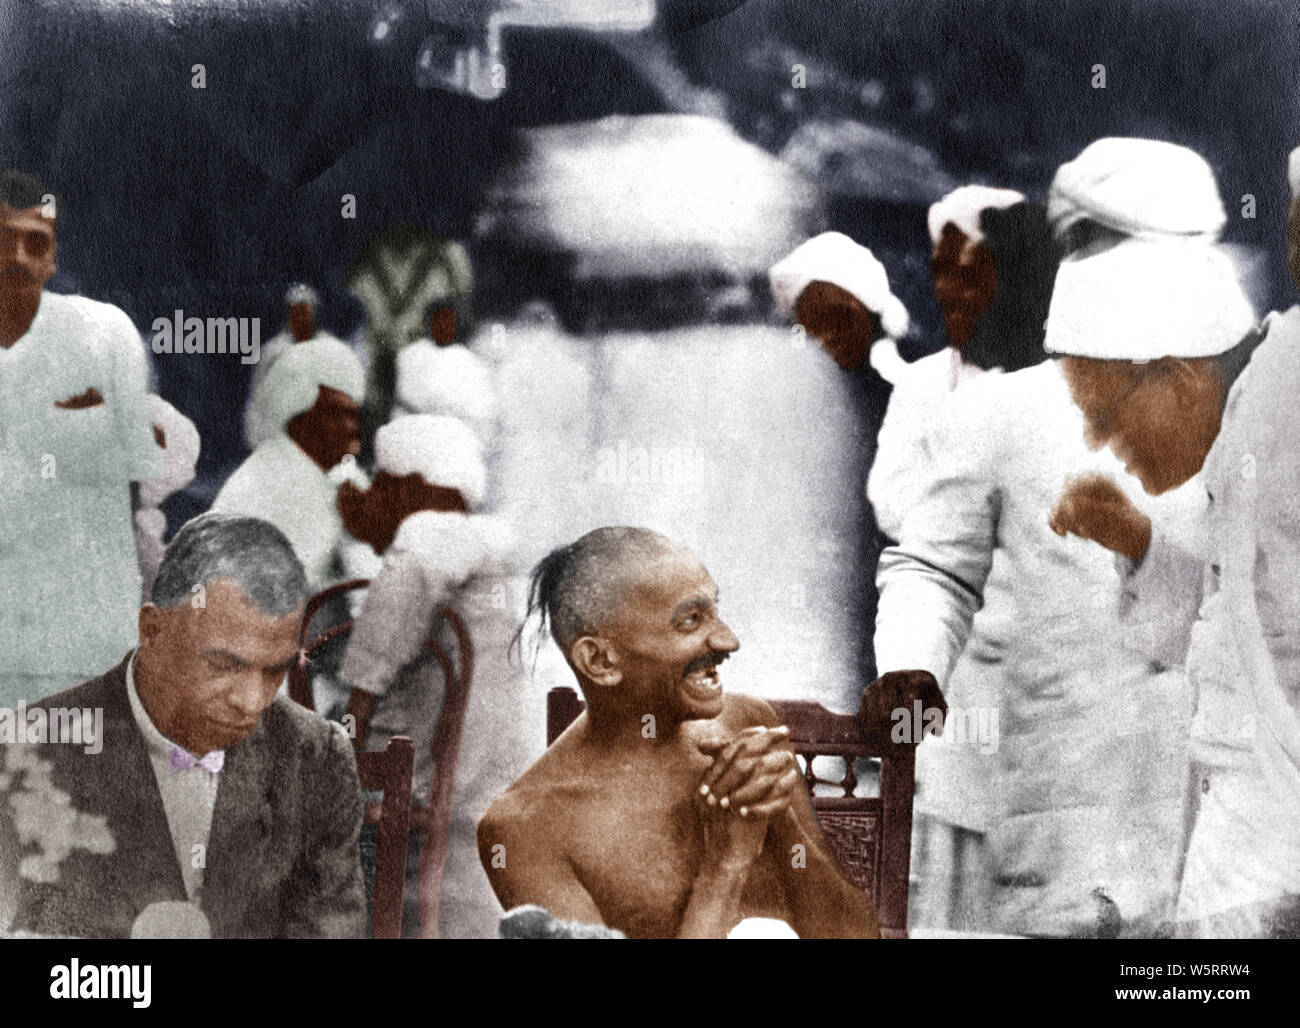 Mahatma Gandhi bei Party von Srinivas Iyengar Madras Tamil Nadu Indien Asien September 1921 gegeben Stockfoto